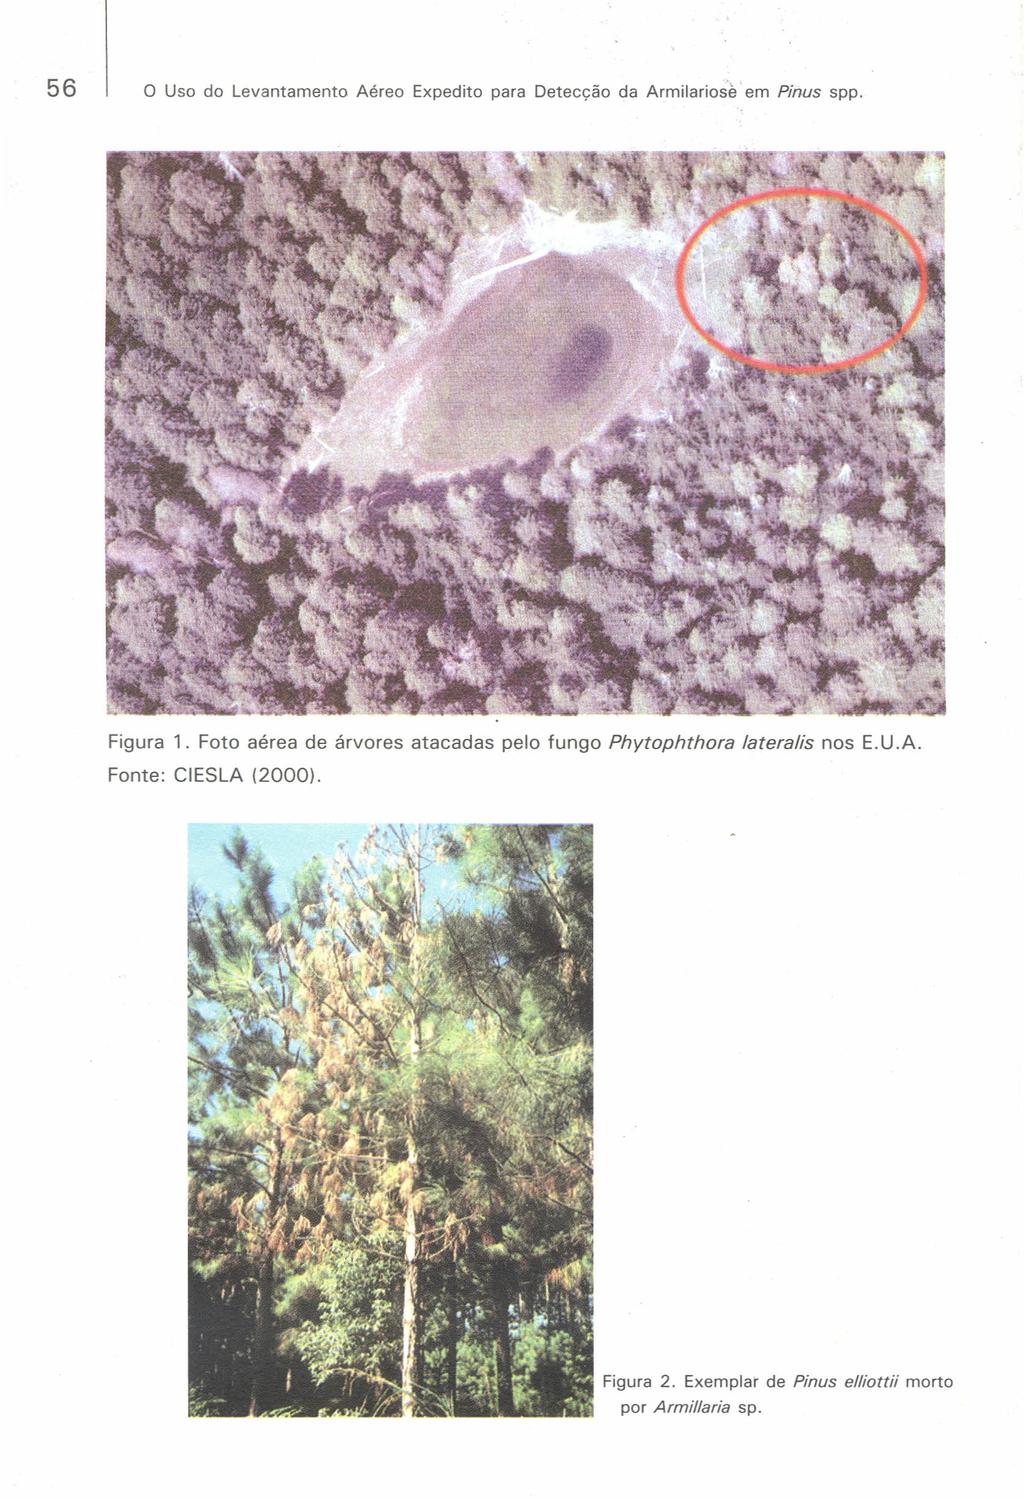 56 o Uso do Levantamento Aéreo Expedito para Detecção da Armilariose em Pinus spp. Figura 1.